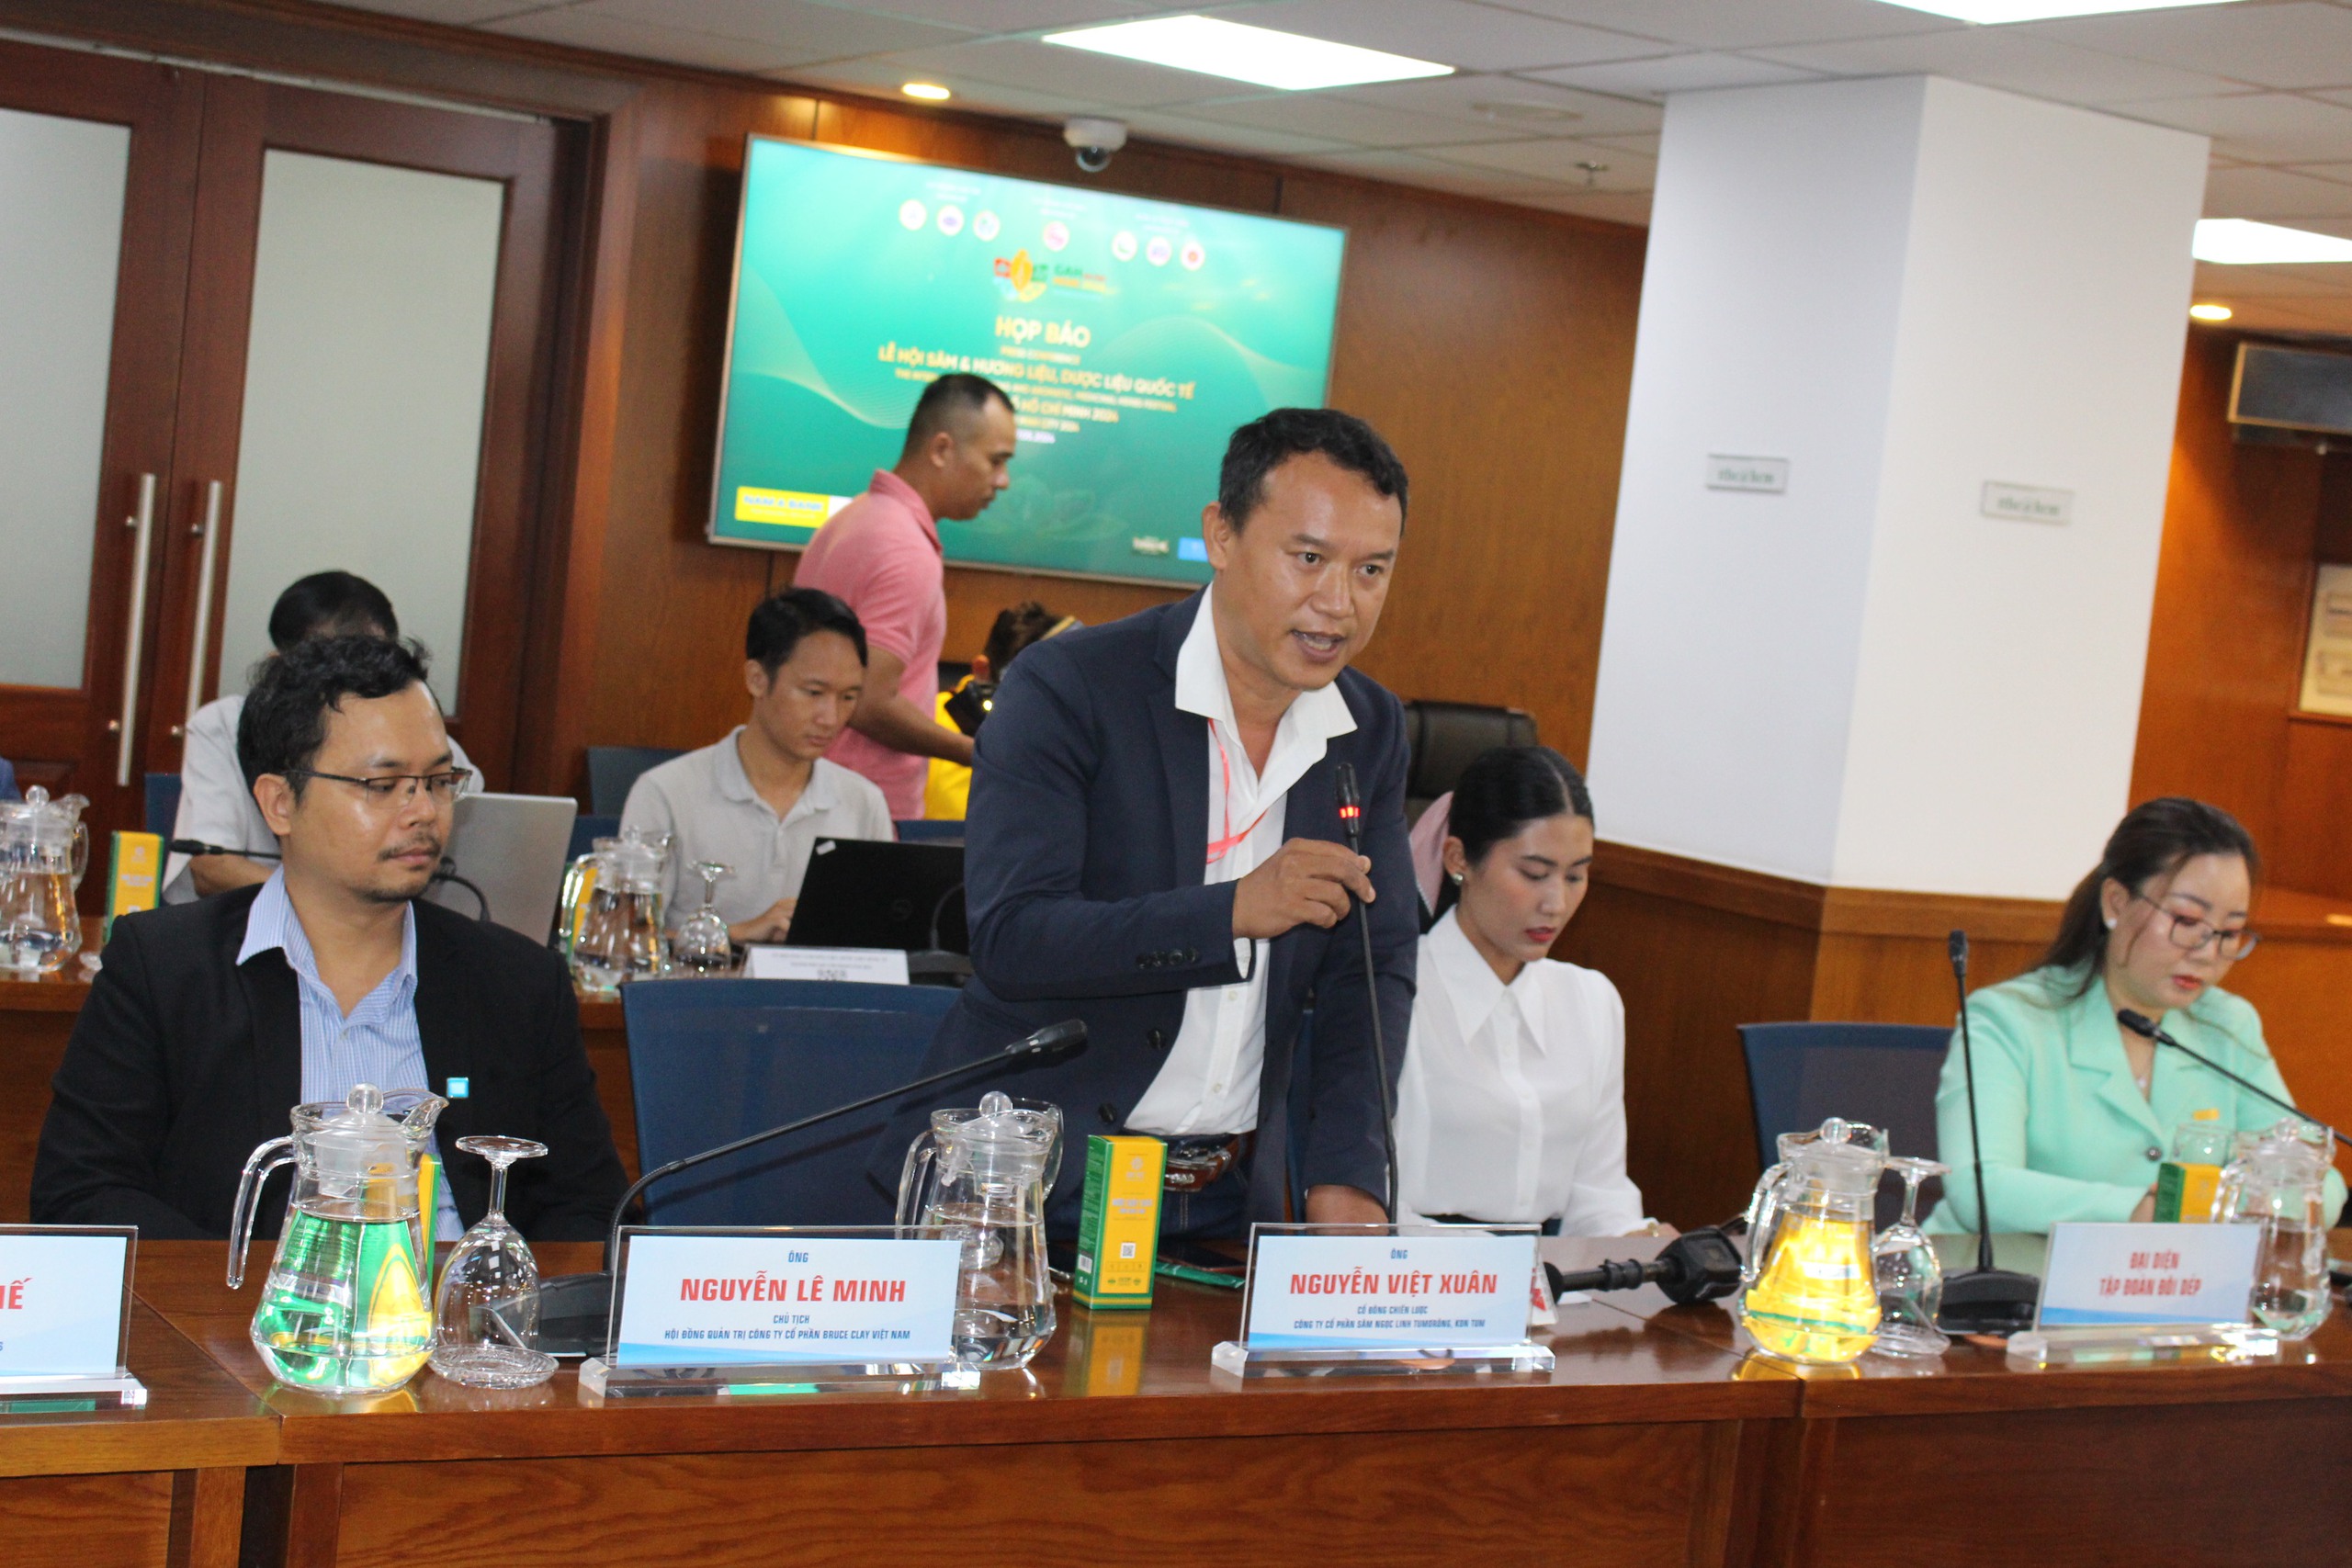 Ông Lê Việt Xuân – đại diện Công ty CP sâm Ngọc Linh Tu Mơ Rông, Kon Tum chia sẻ tại buổi họp báo